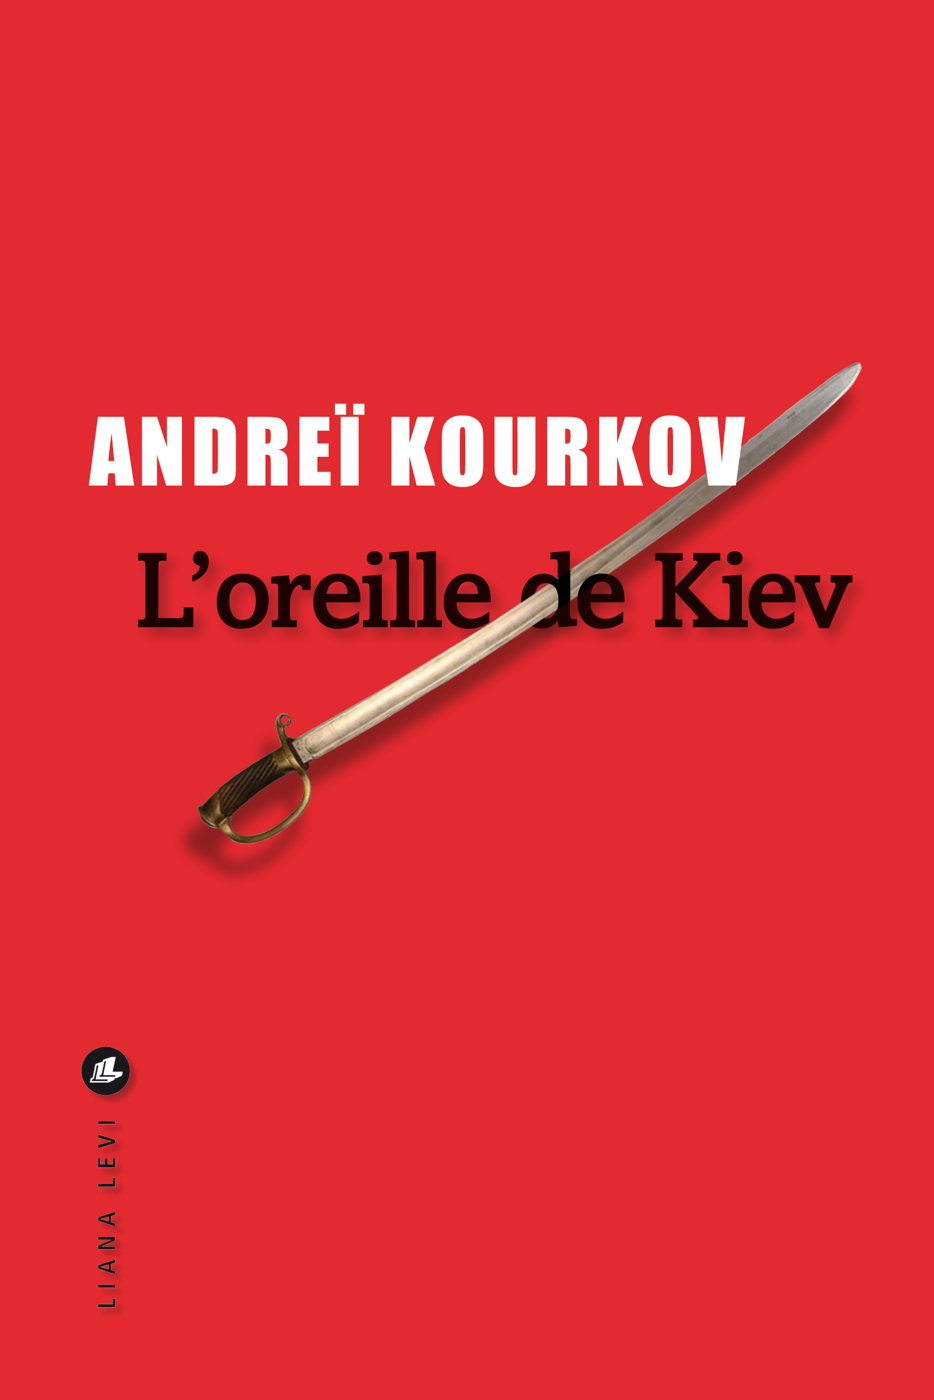 Afficher "L'Oreille de Kiev"